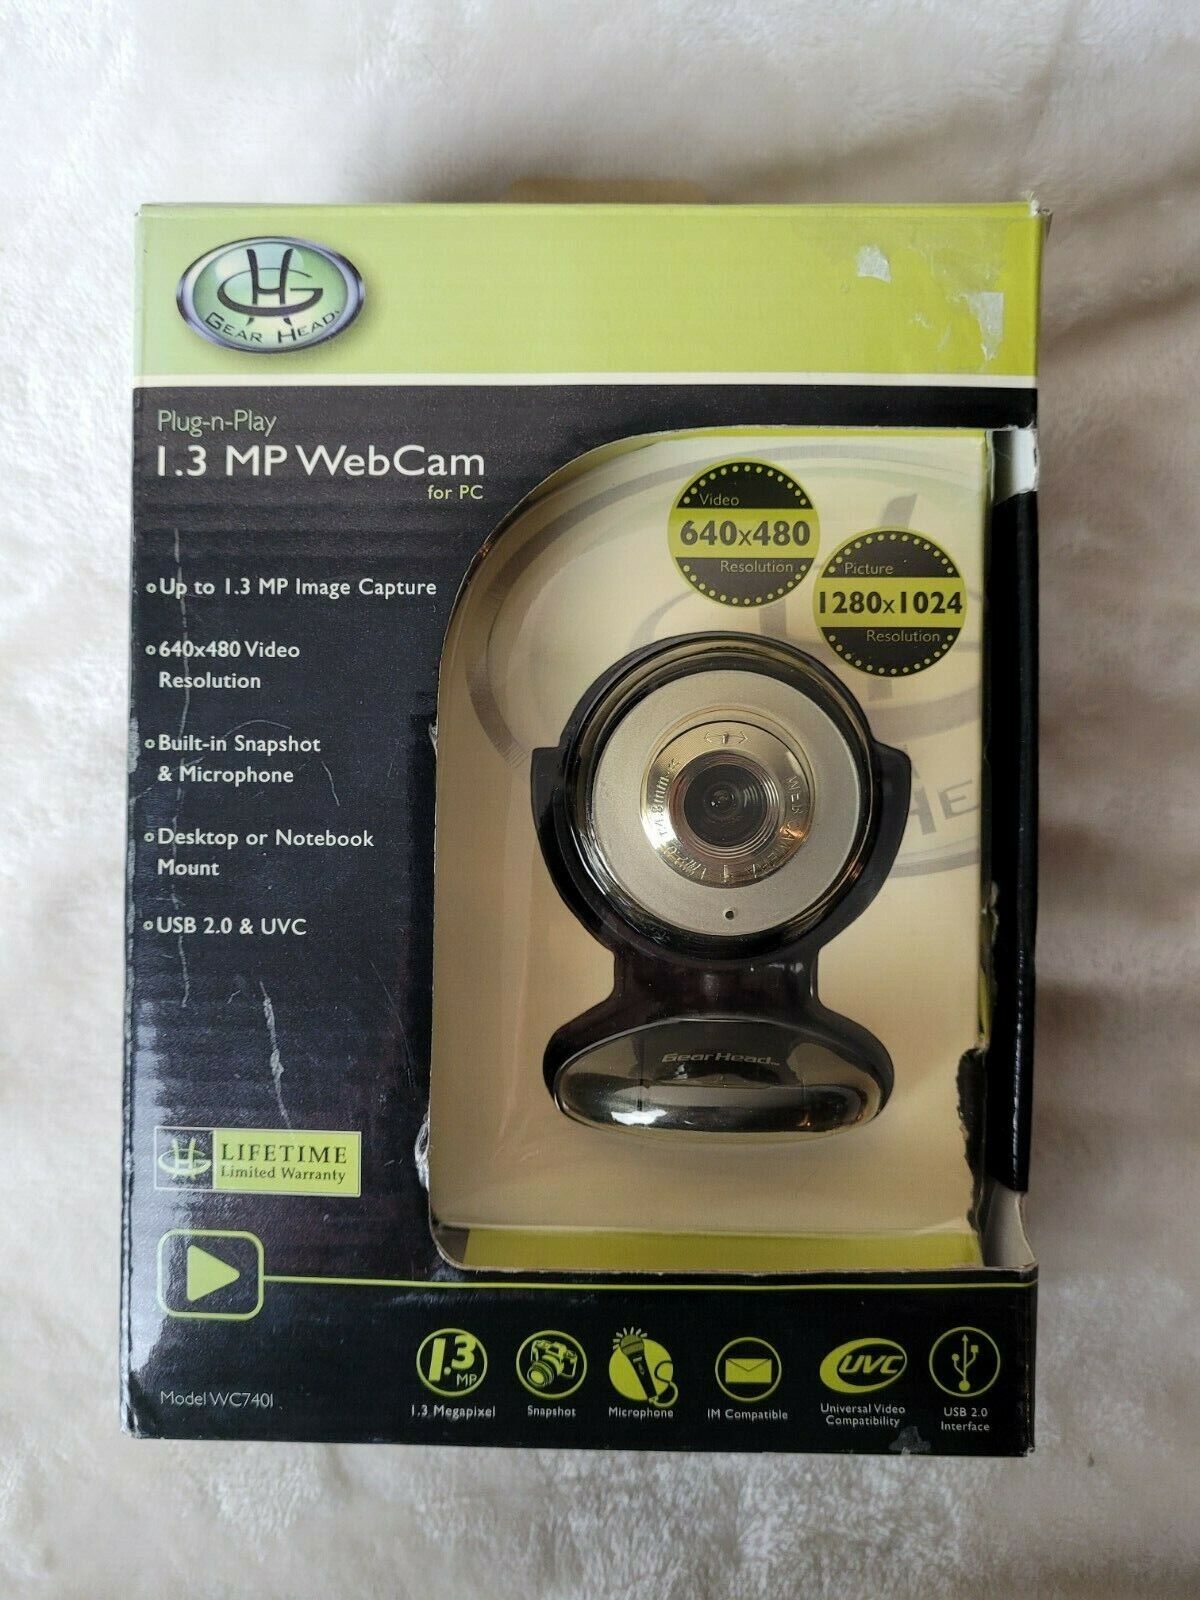 GEAR HEAD Plug-n-Play 1.3 MP WebCam for PC Model WC740I